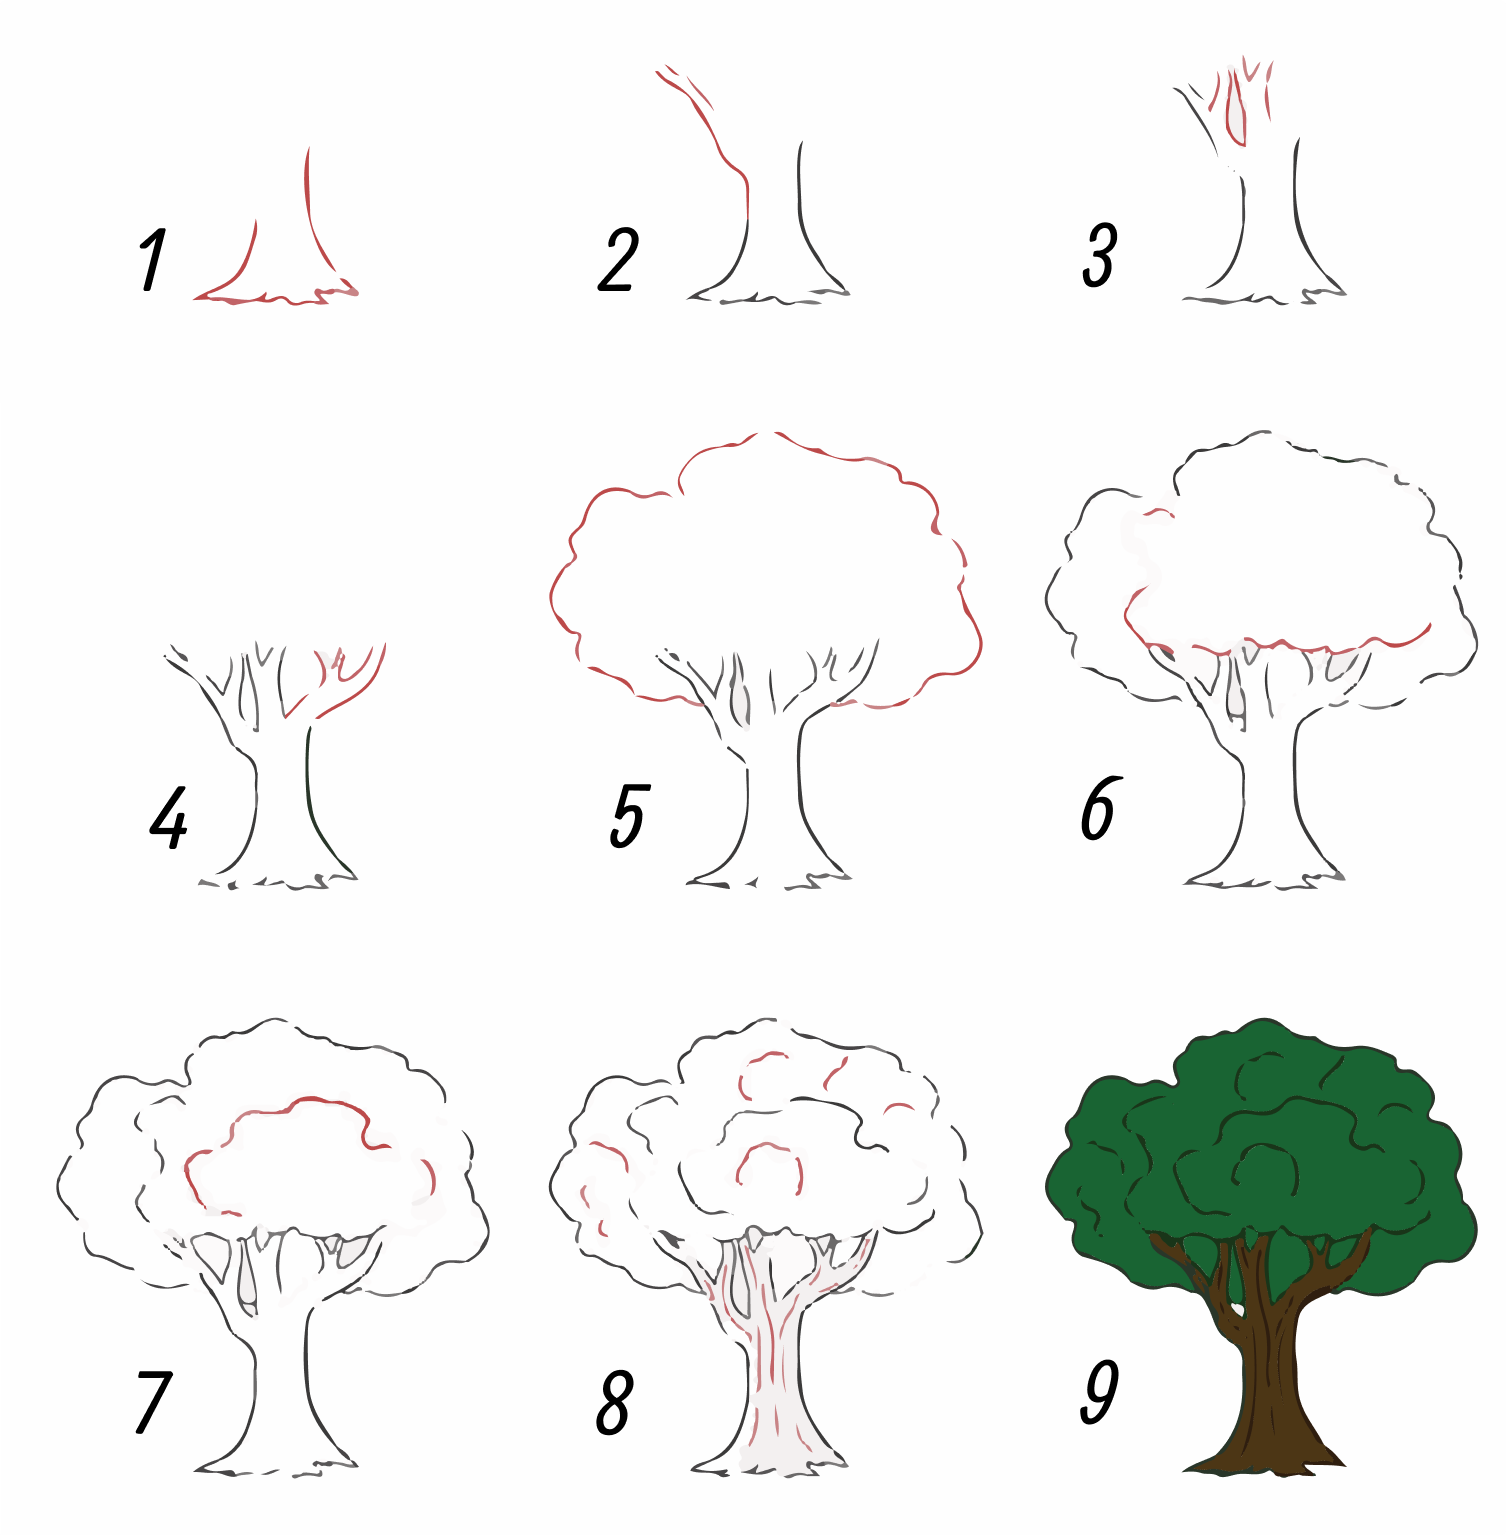 Як намалювати дерево